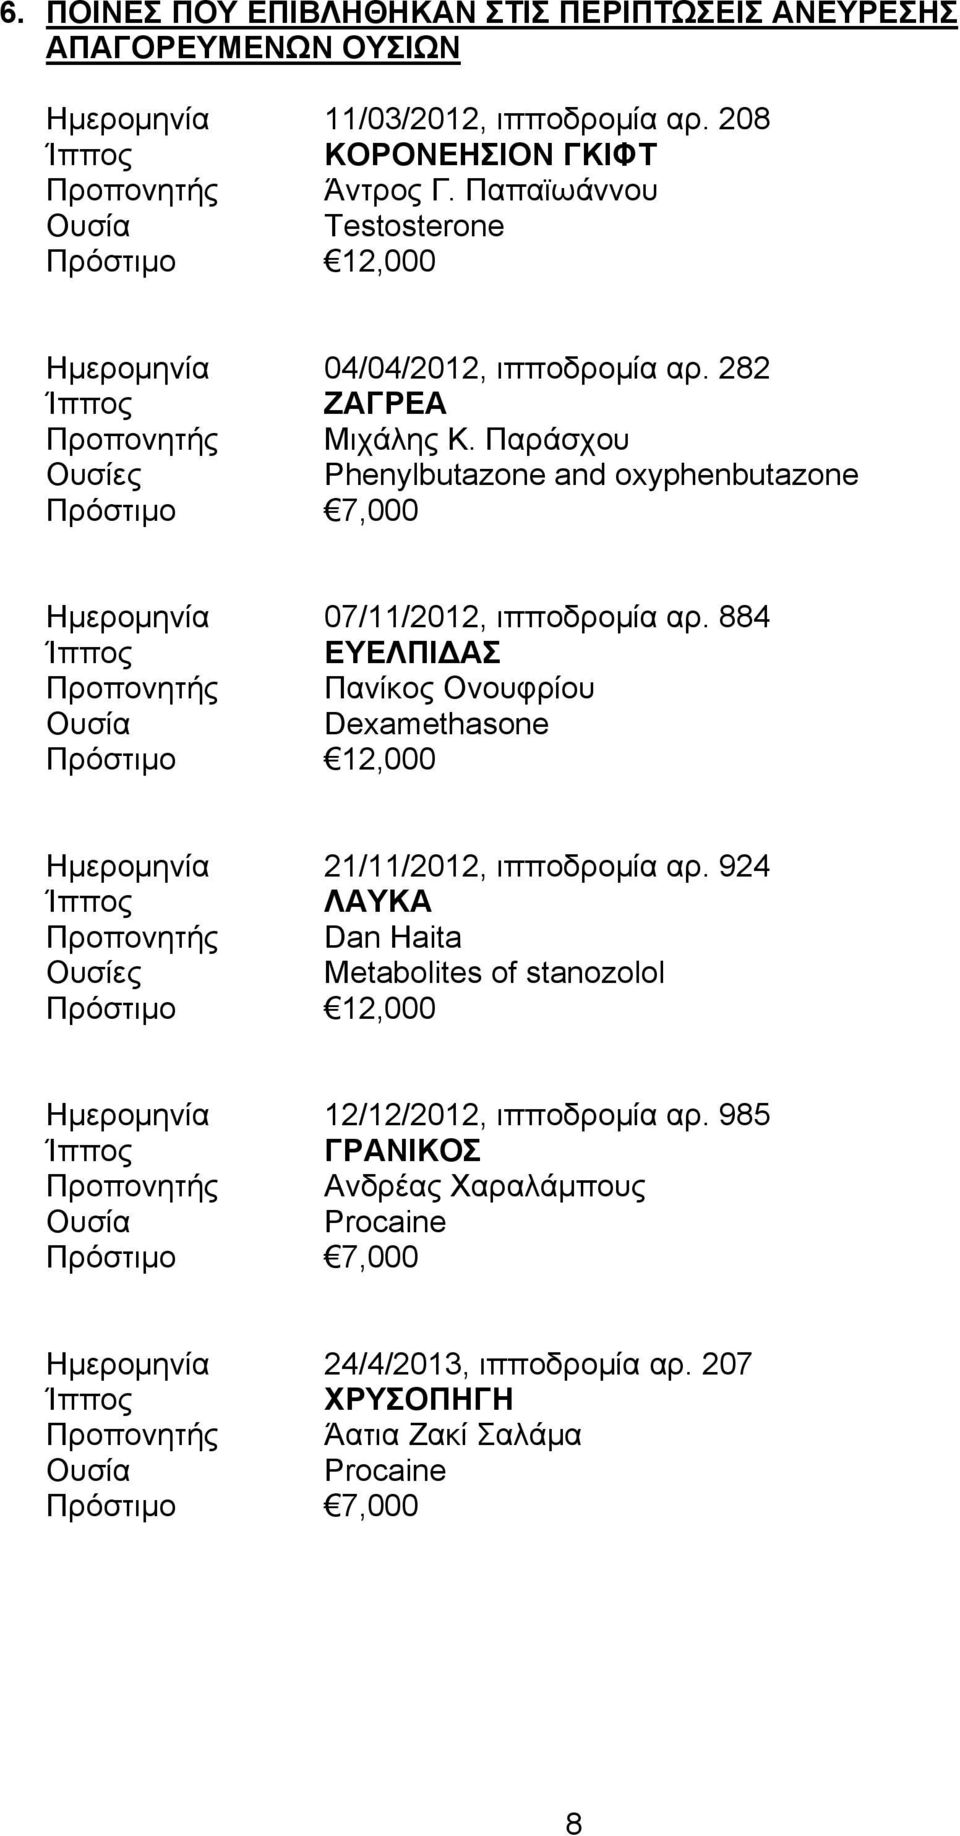 Παράσχου Ουσίες Phenylbutazone and oxyphenbutazone Πρόστιμο 7,000 Ημερομηνία 07/11/2012, ιπποδρομία αρ.